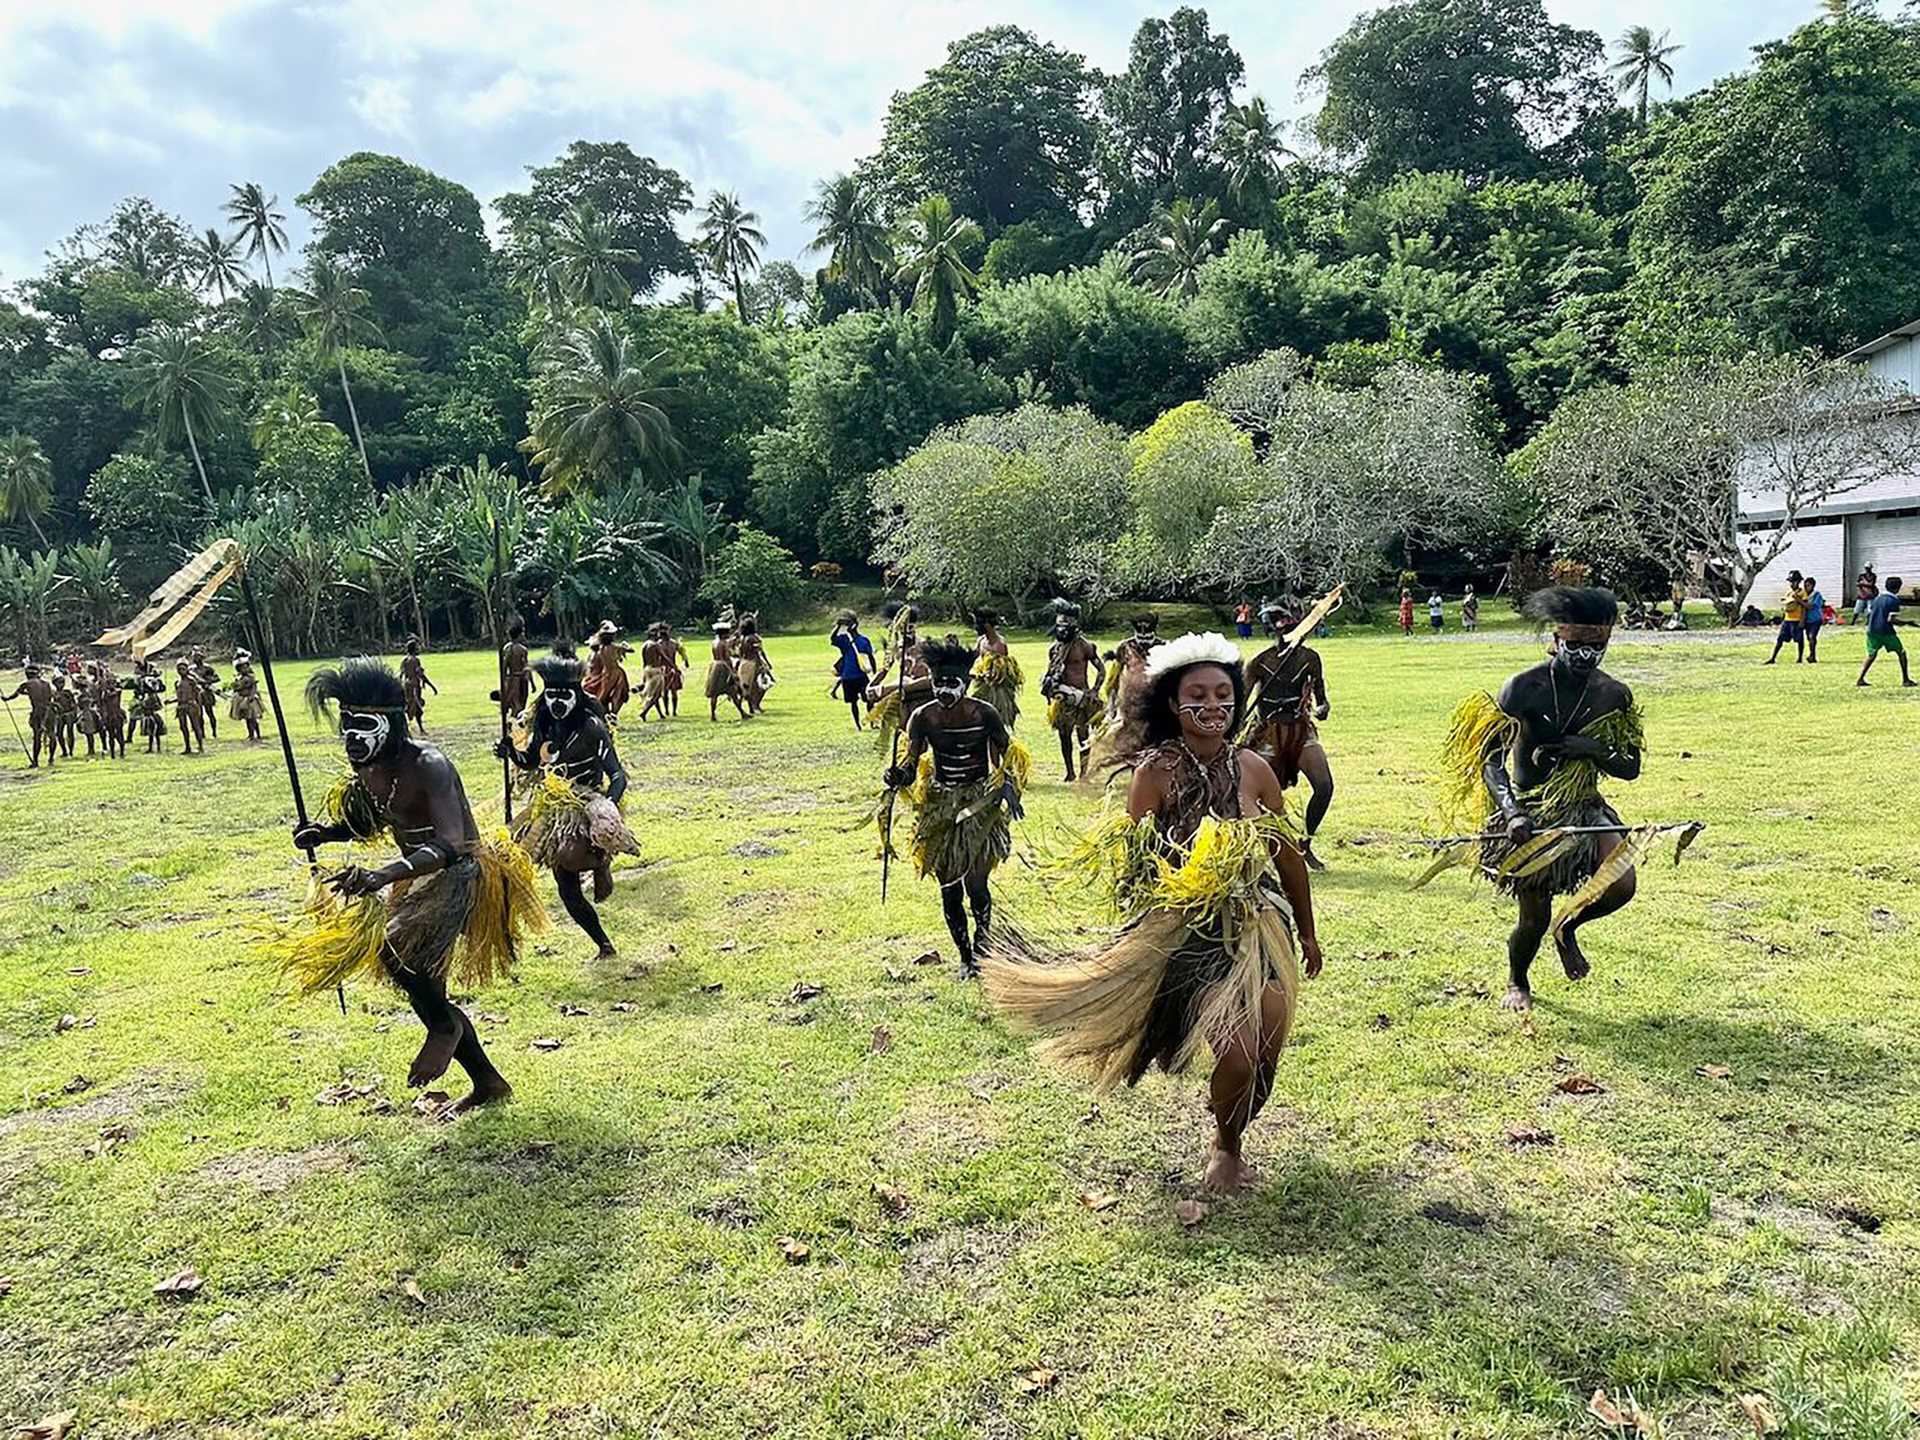 dancers perform in Papua New Guinea